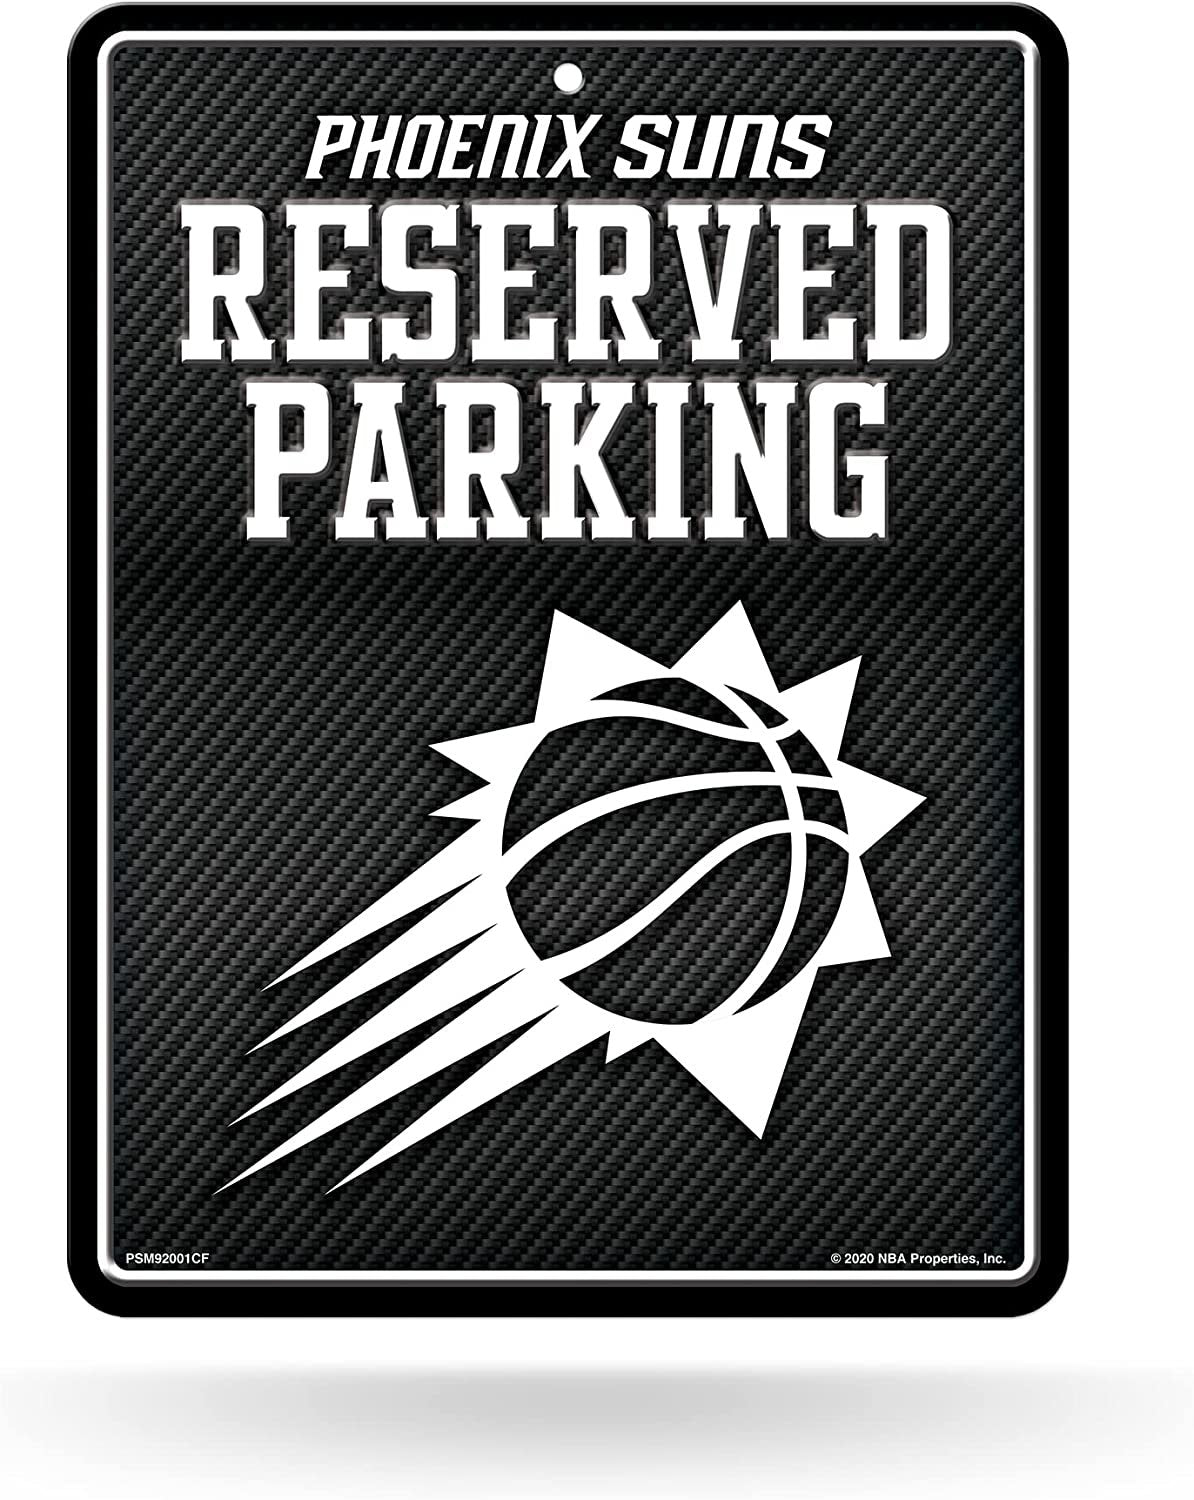 Phoenix Suns Metal Parking Novelty Wall Sign 8.5 x 11 Inch Carbon Fiber Design